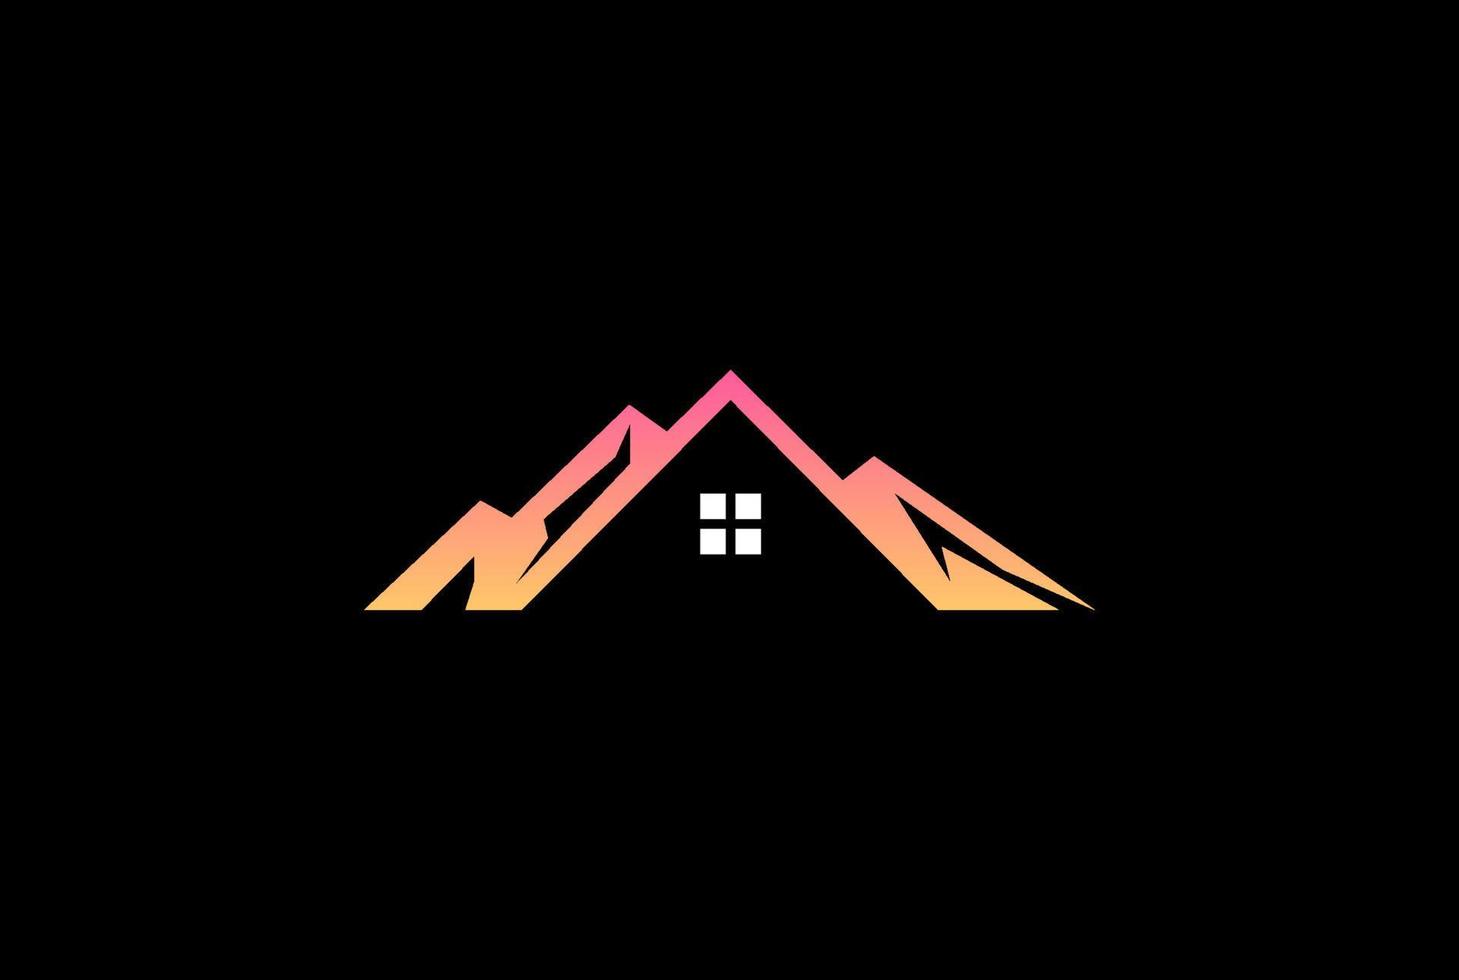 colline de montagne de glace moderne avec maison pour l'immobilier cabine villa auberge hôtel chalet chalet création de logo vecteur